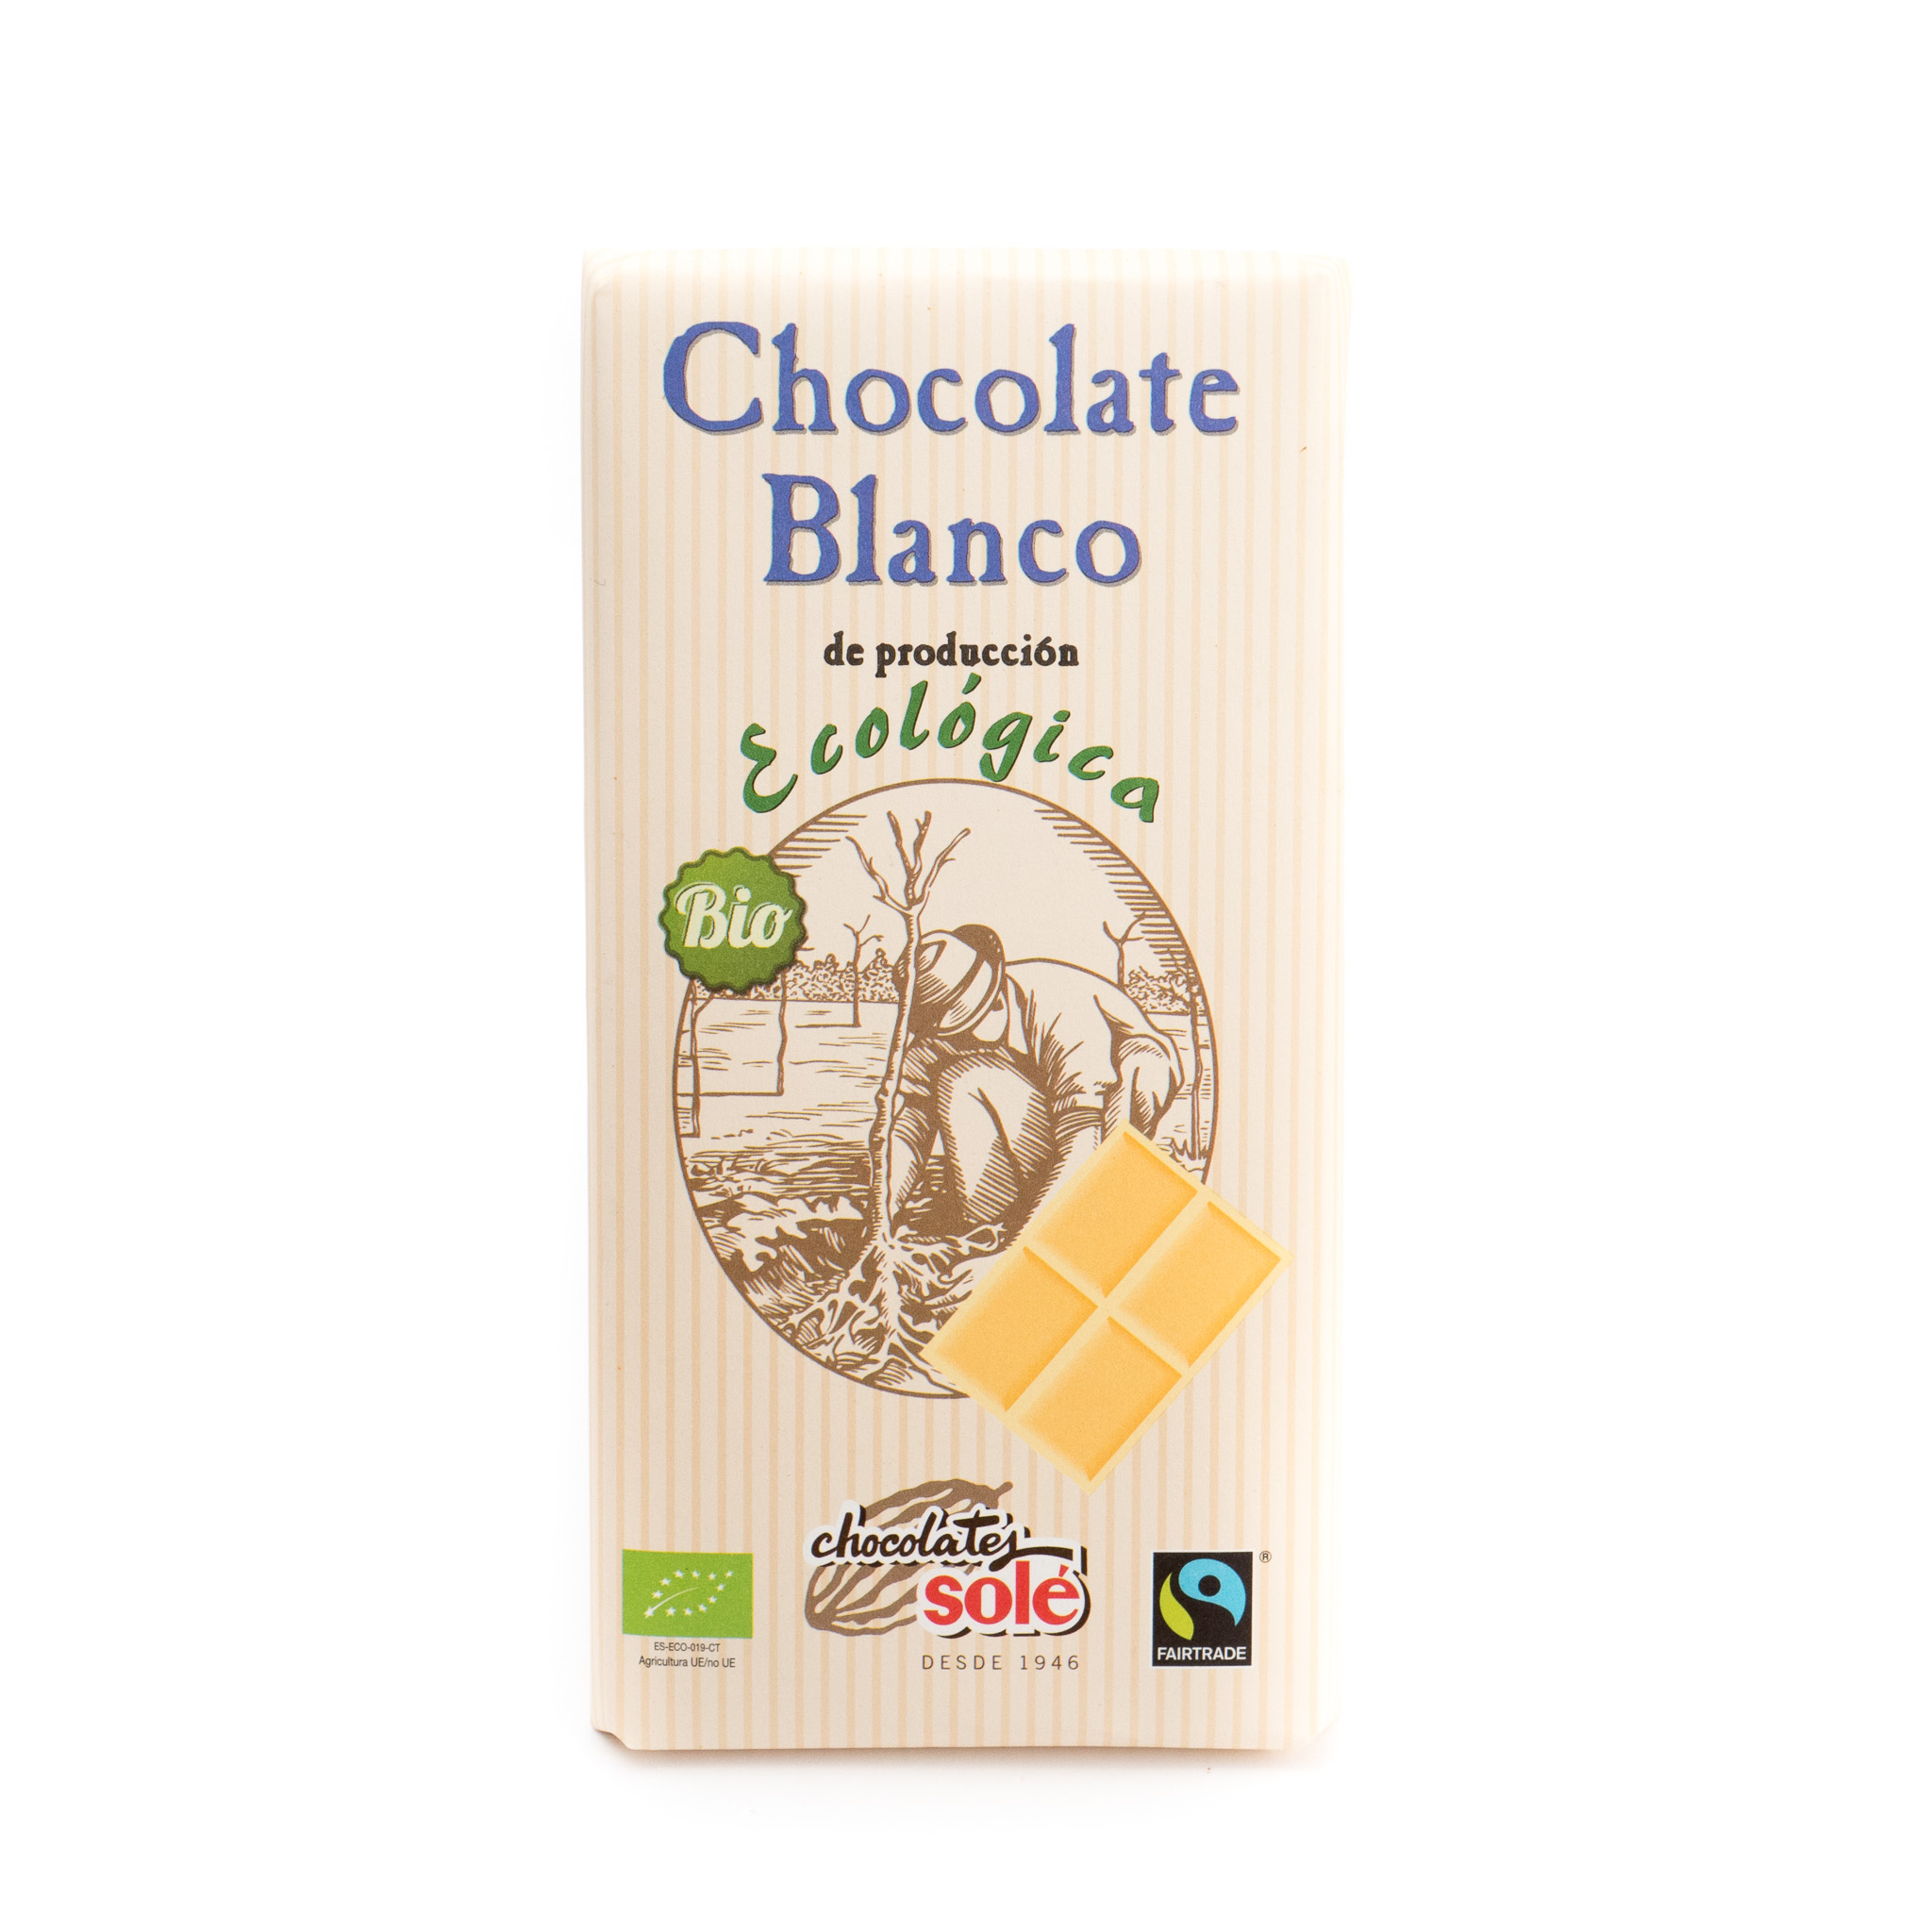 Chocolate blanco ecológico